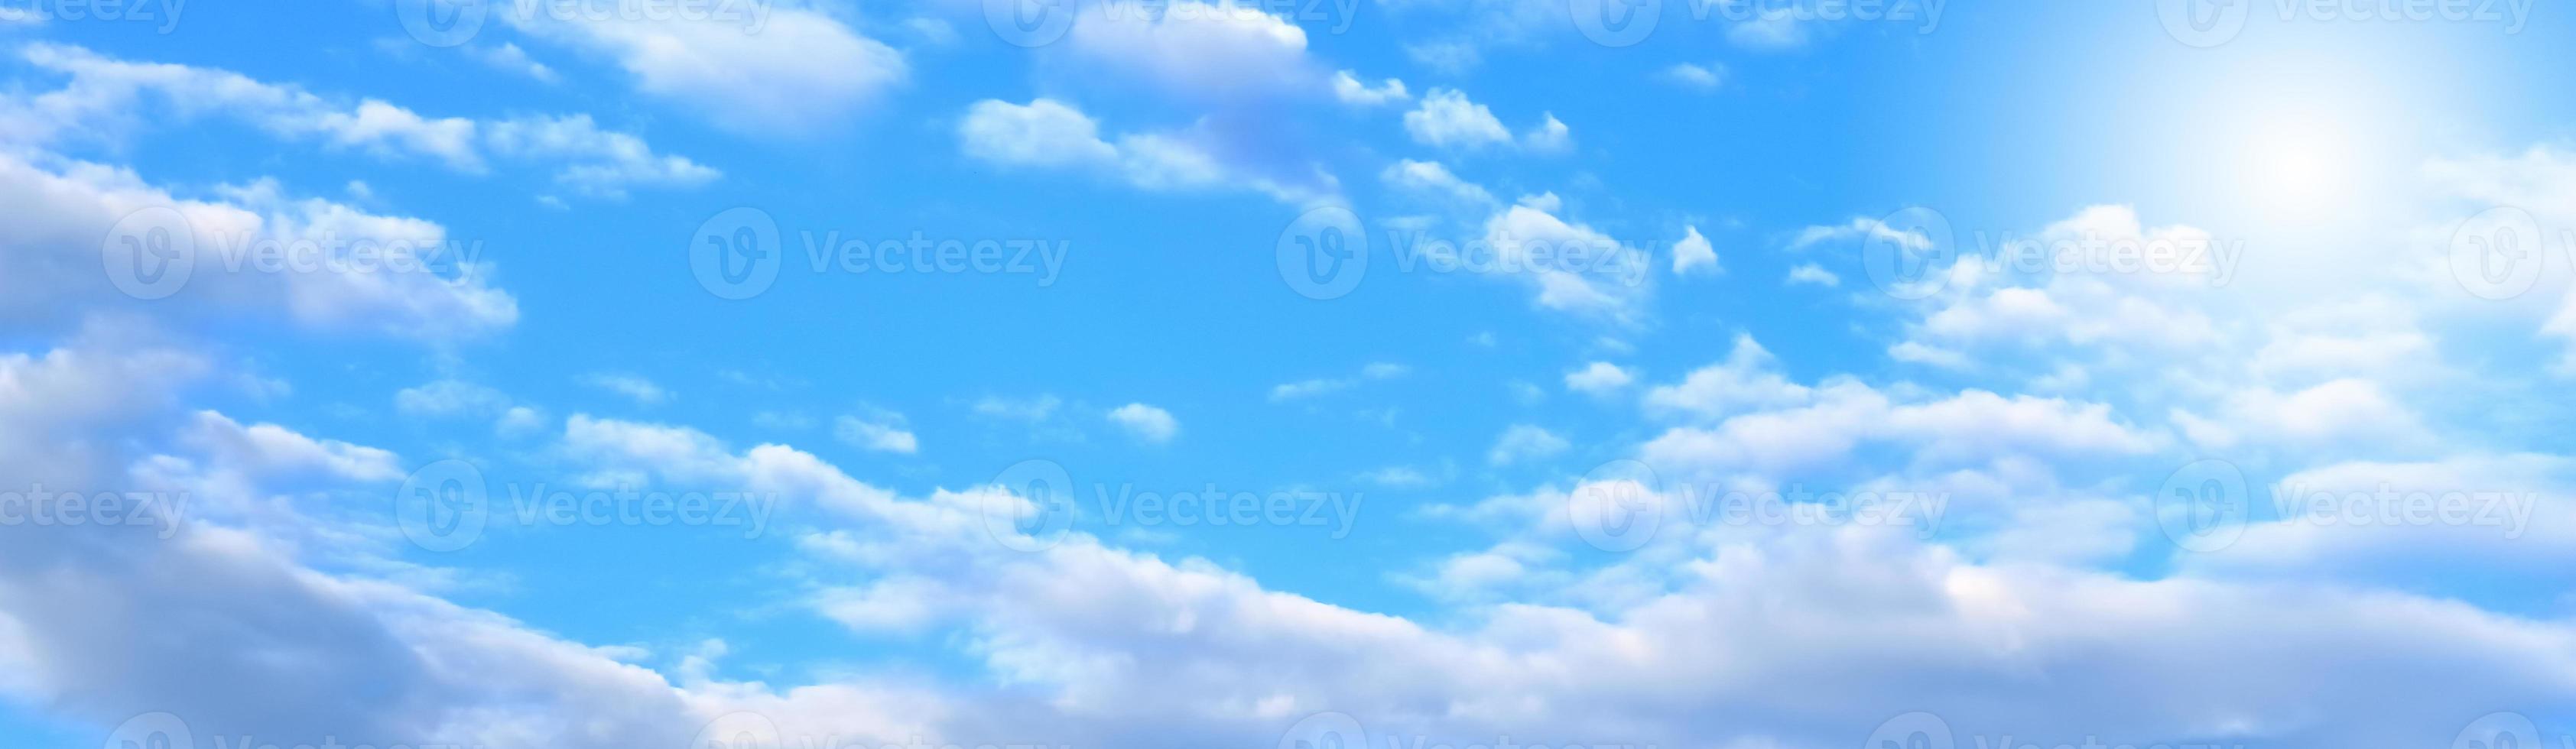 blå himmel och vitt moln foto